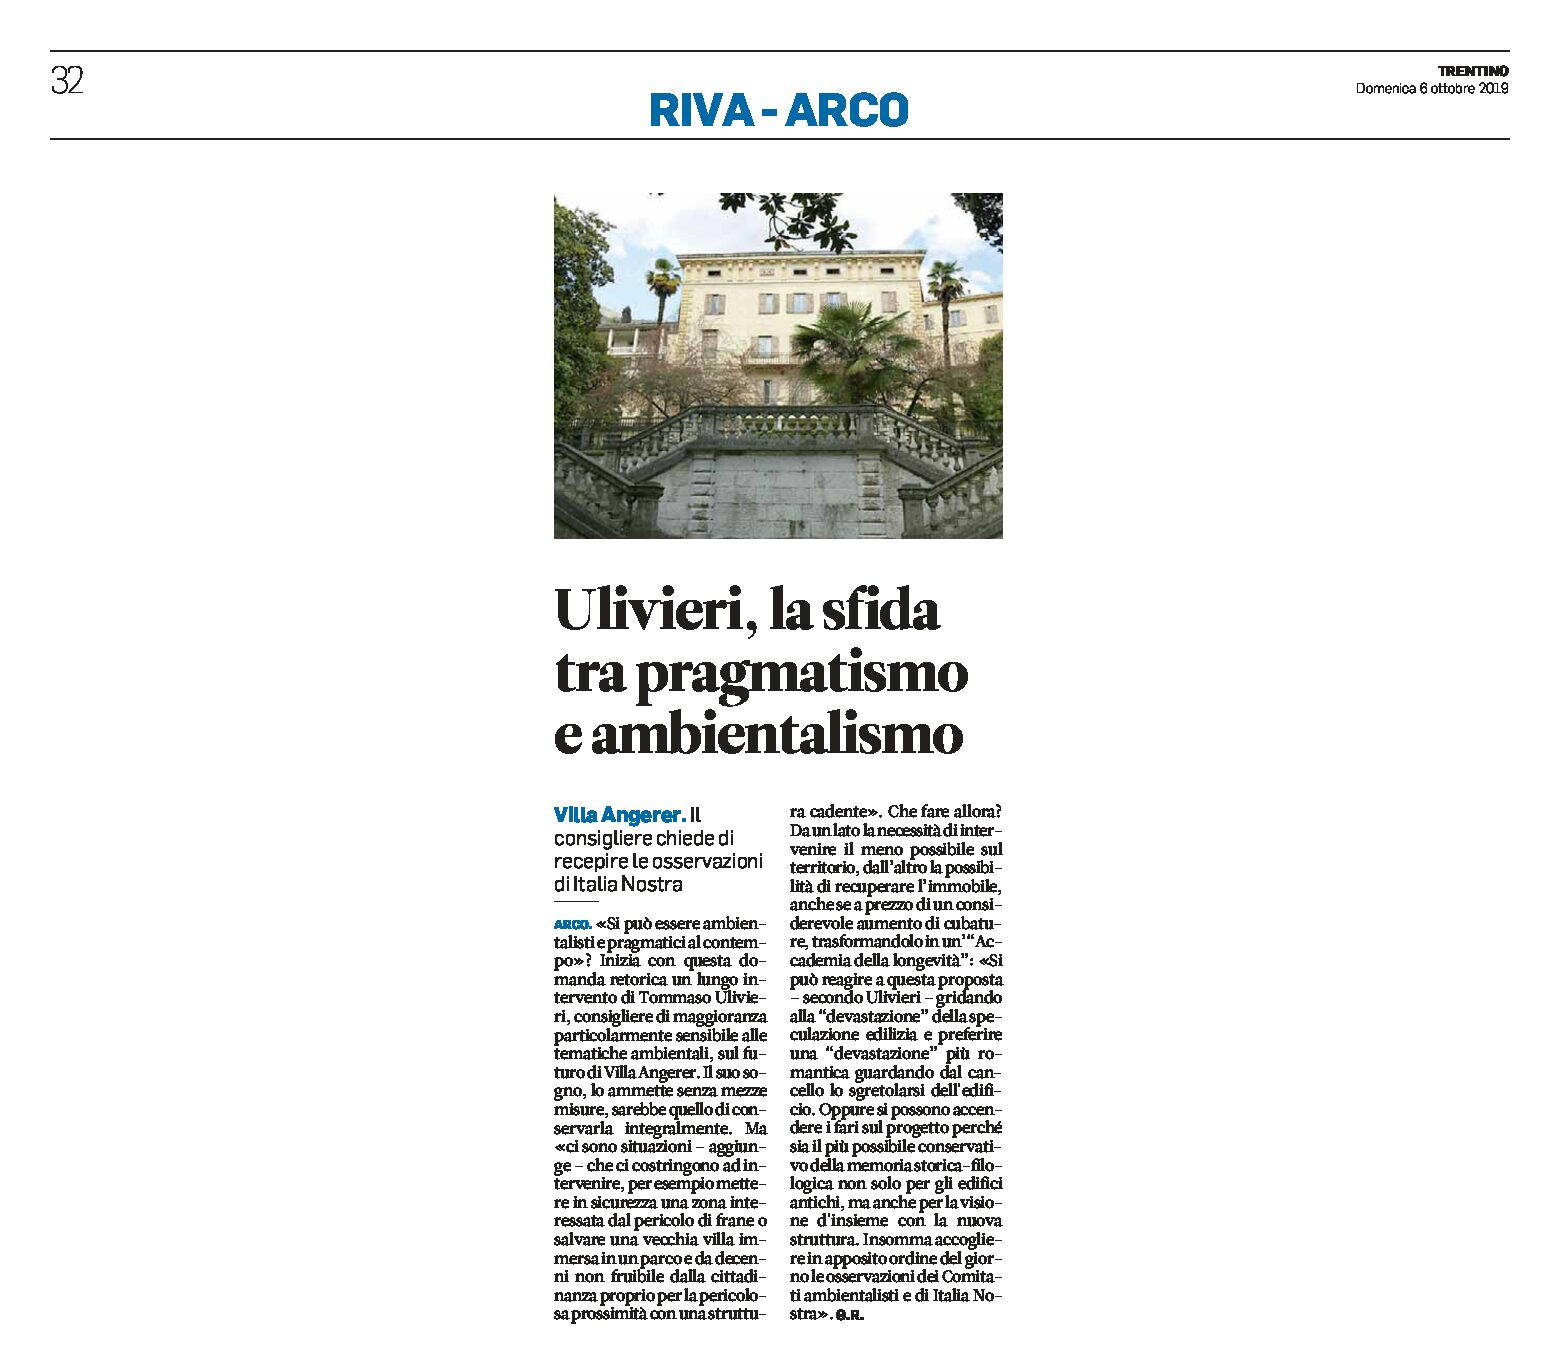 Arco, Villa Angerer: Ulivieri chiede di recepire le osservazioni di Italia Nostra